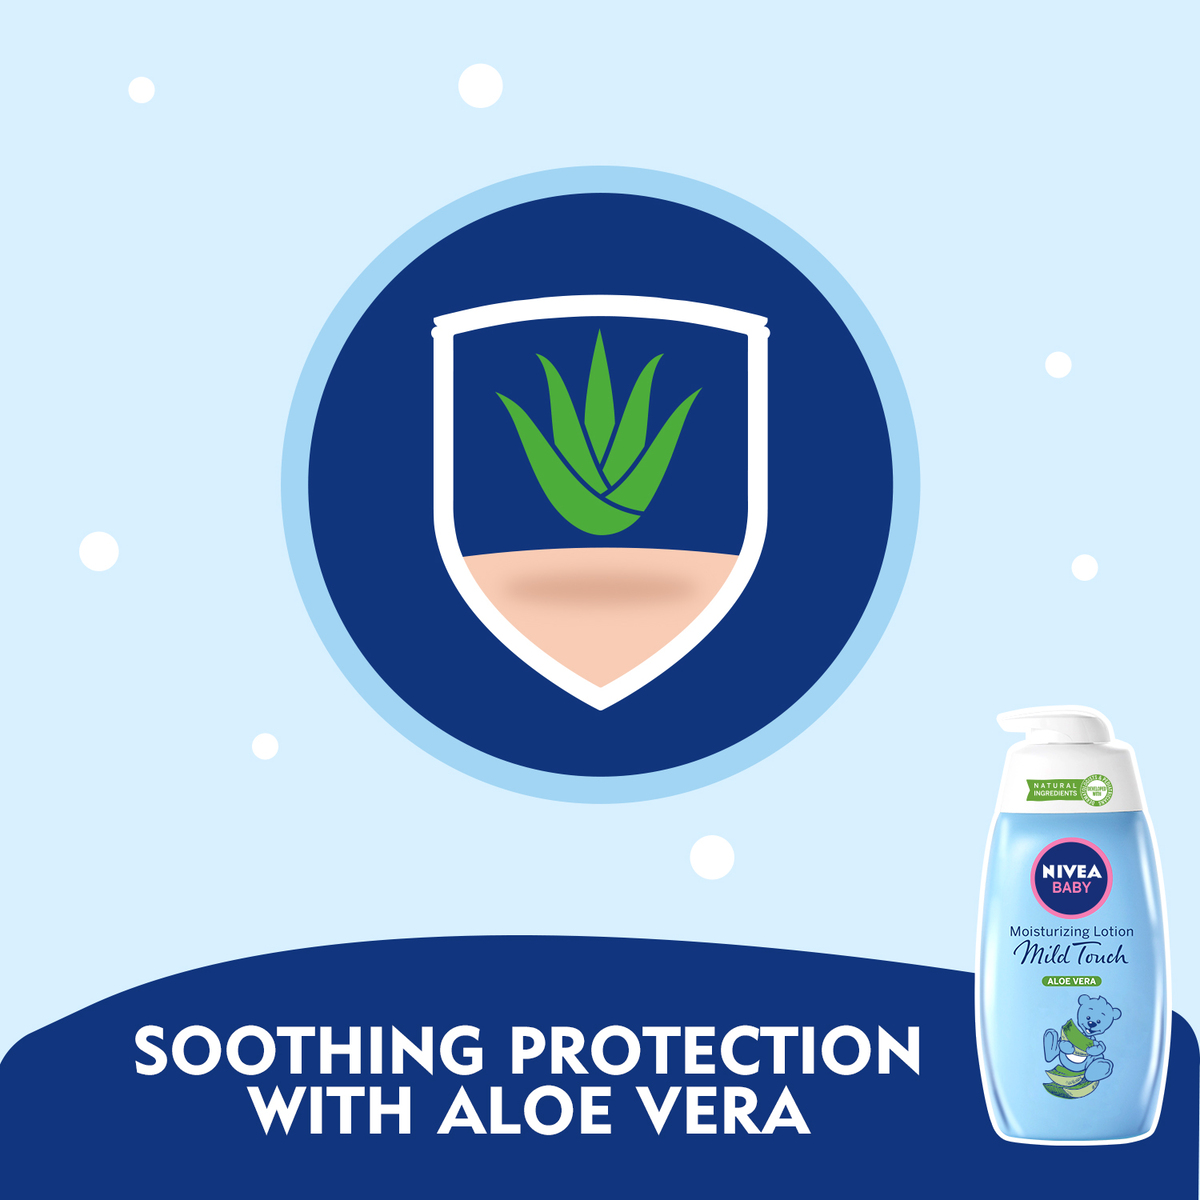 Nivea Baby Moisturizing Lotion Mild Touch Aloe Vera 500 ml